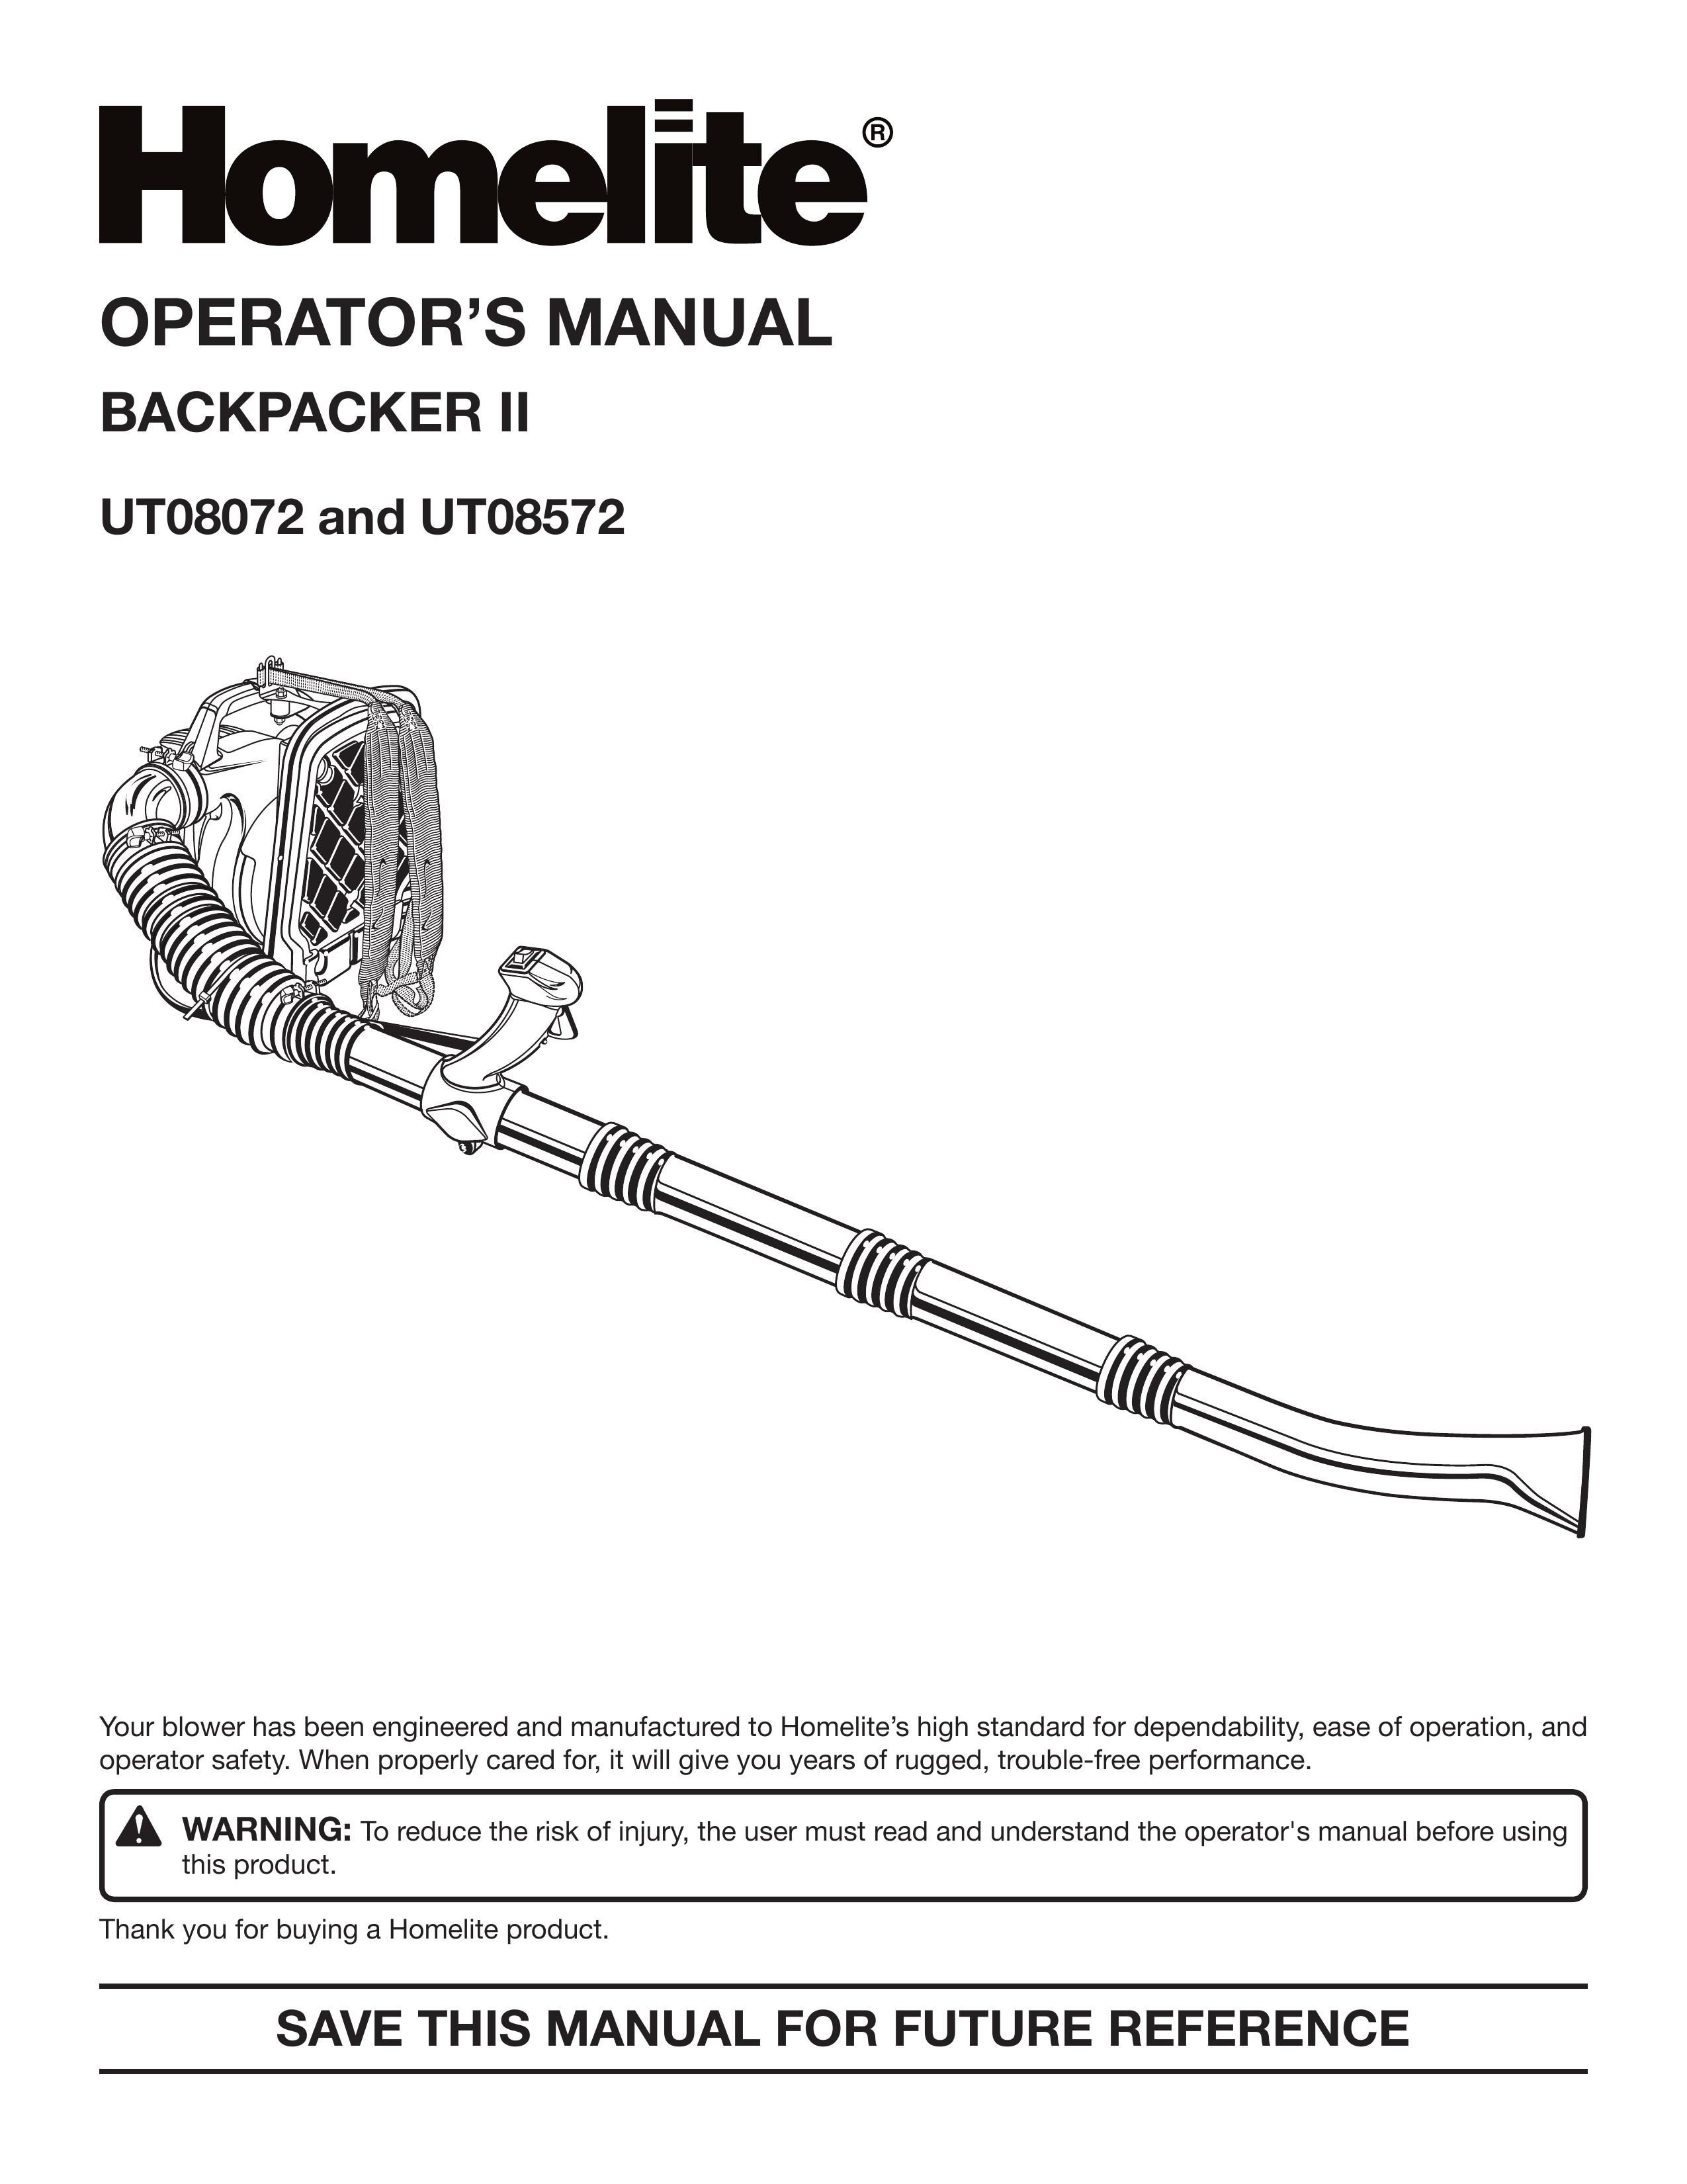 Homelite UT08572 Blower User Manual